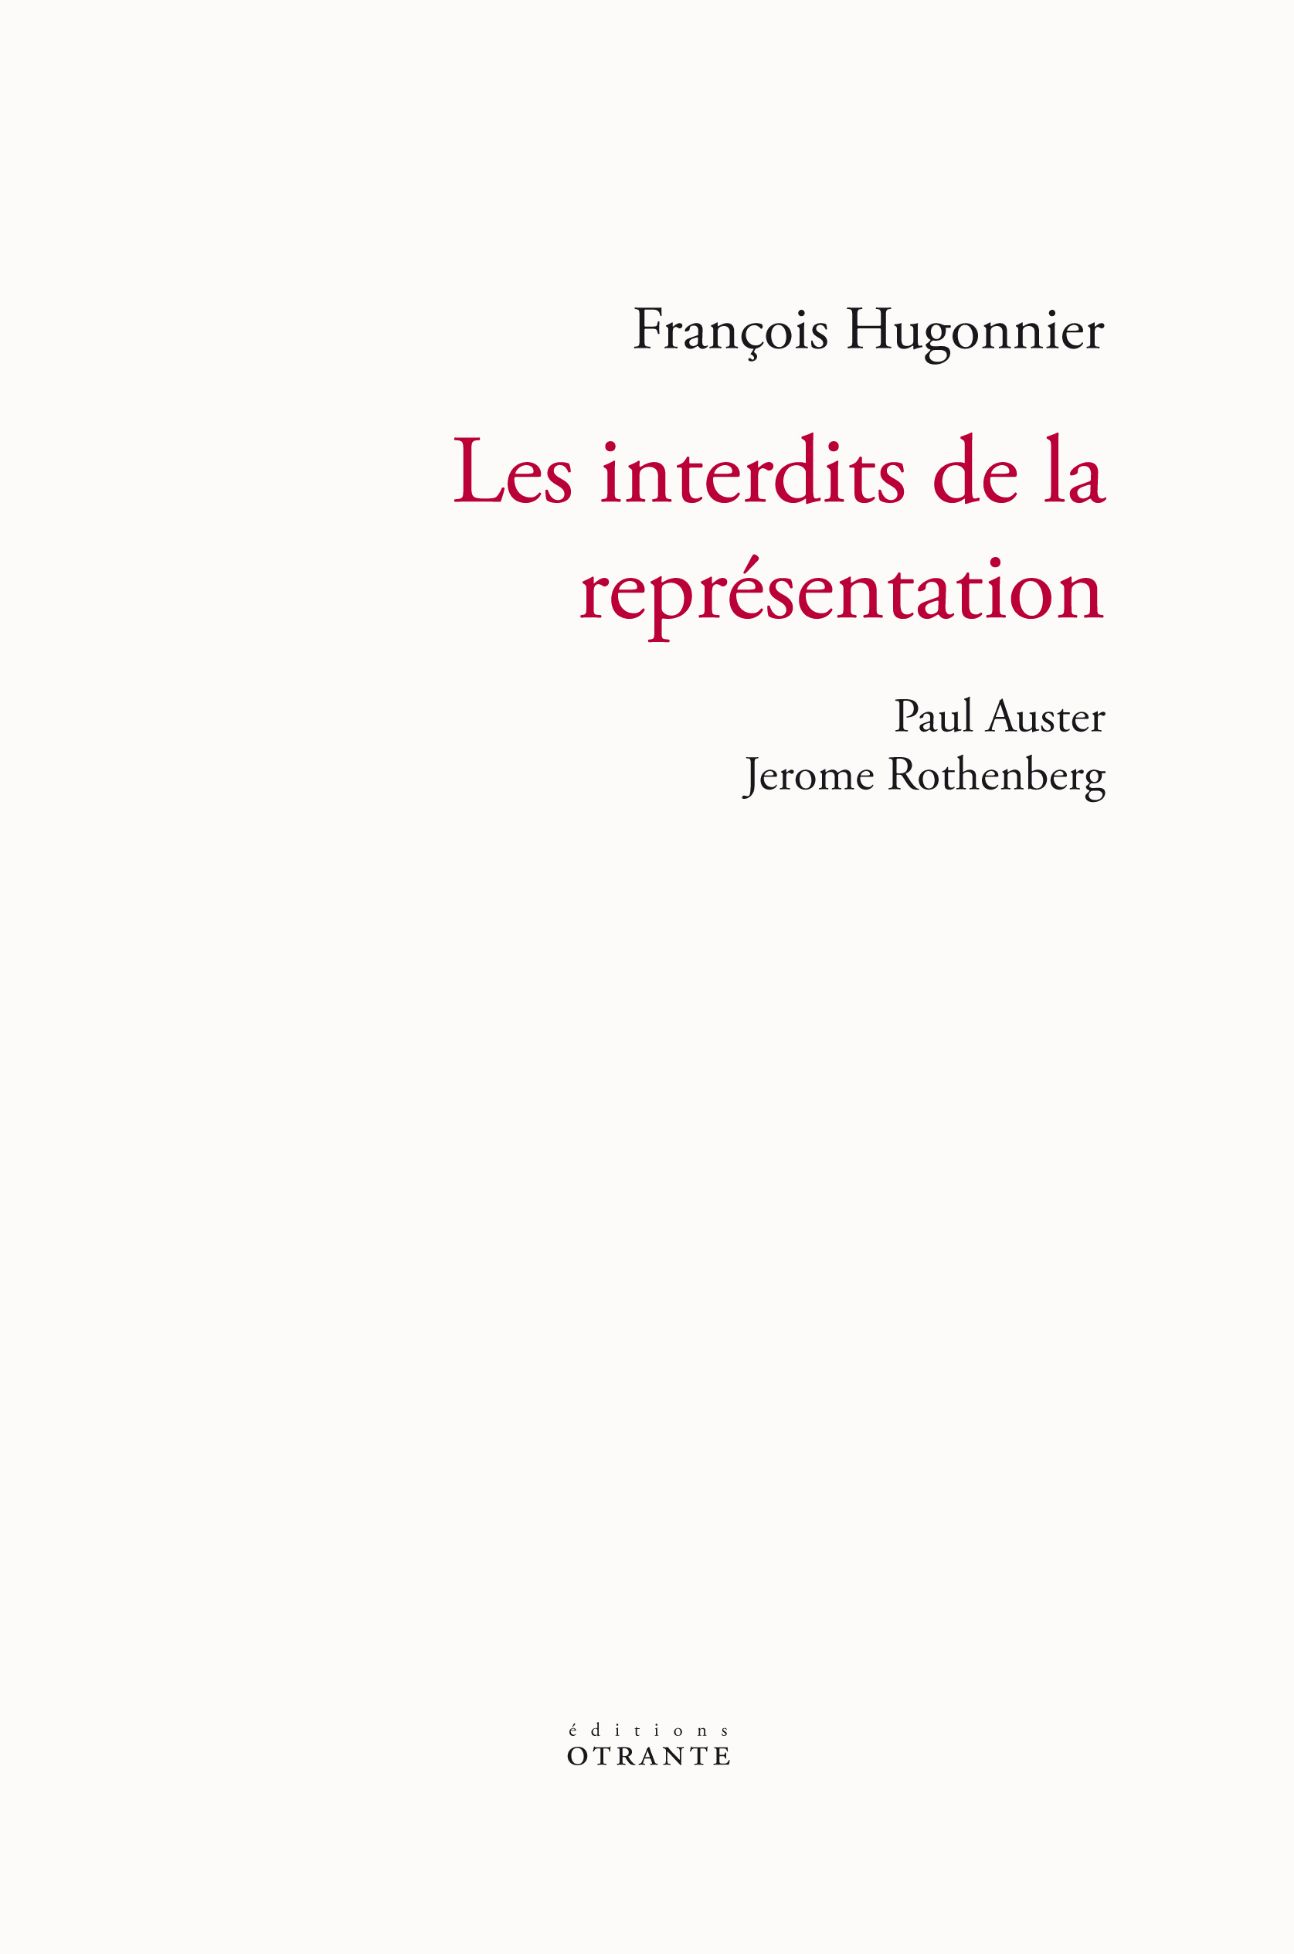 François Hugonnier, Les interdits de la représentation. Paul Auster, Jerome Rothenberg